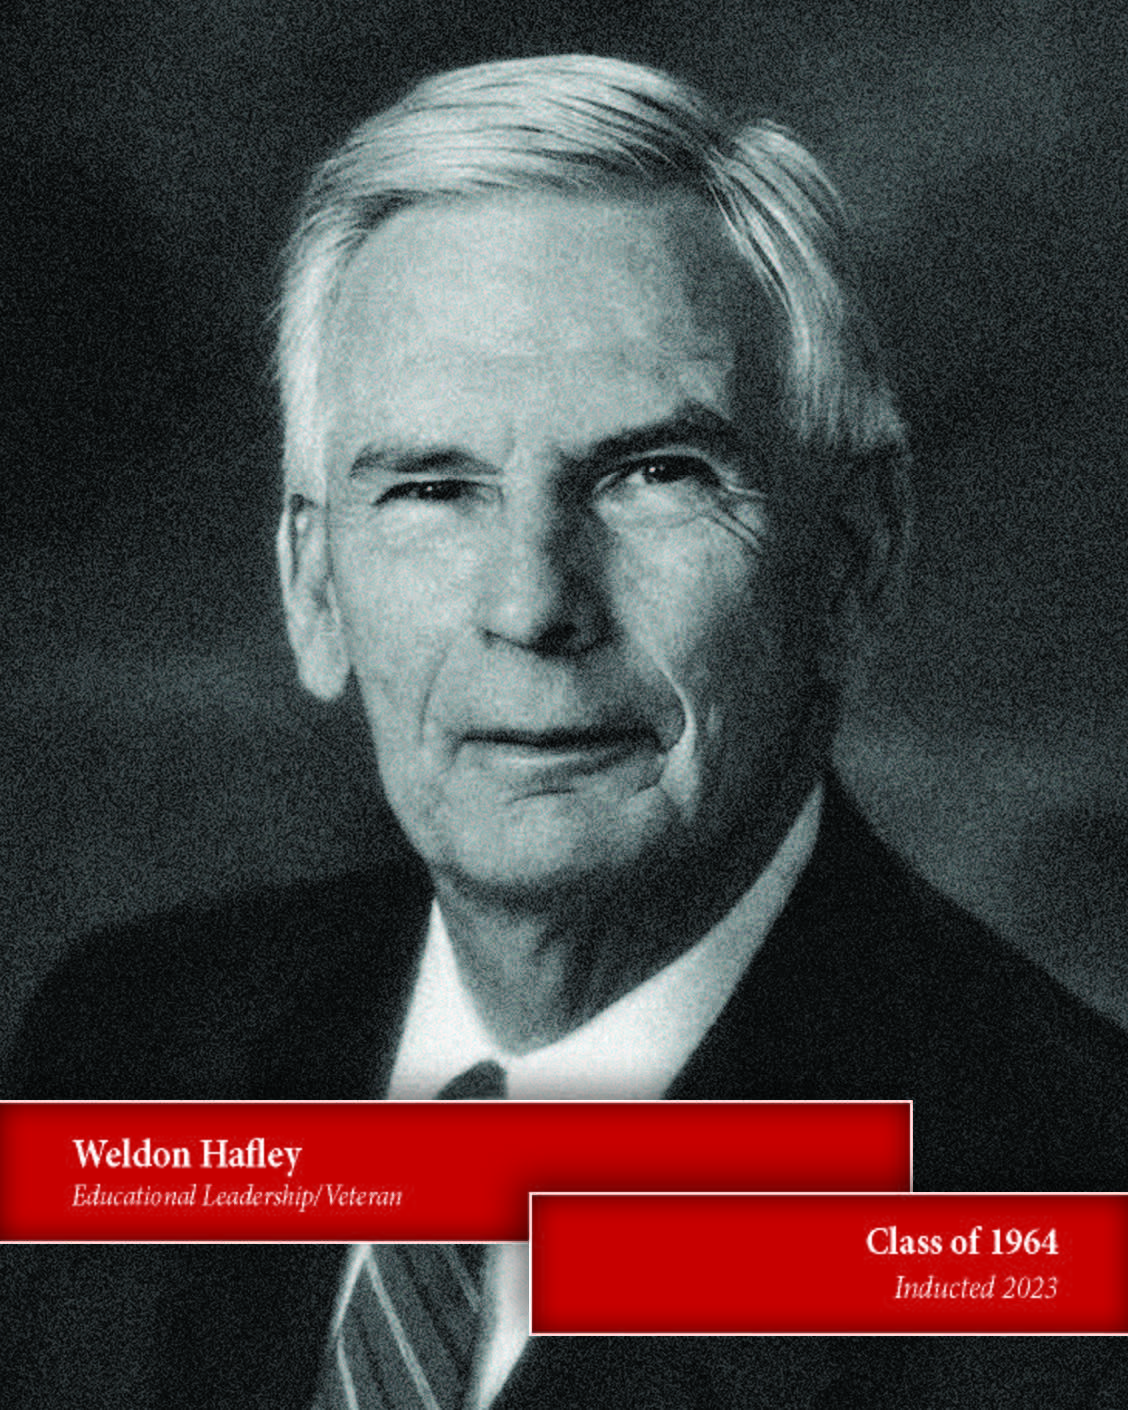 Weldon Hafley, '64